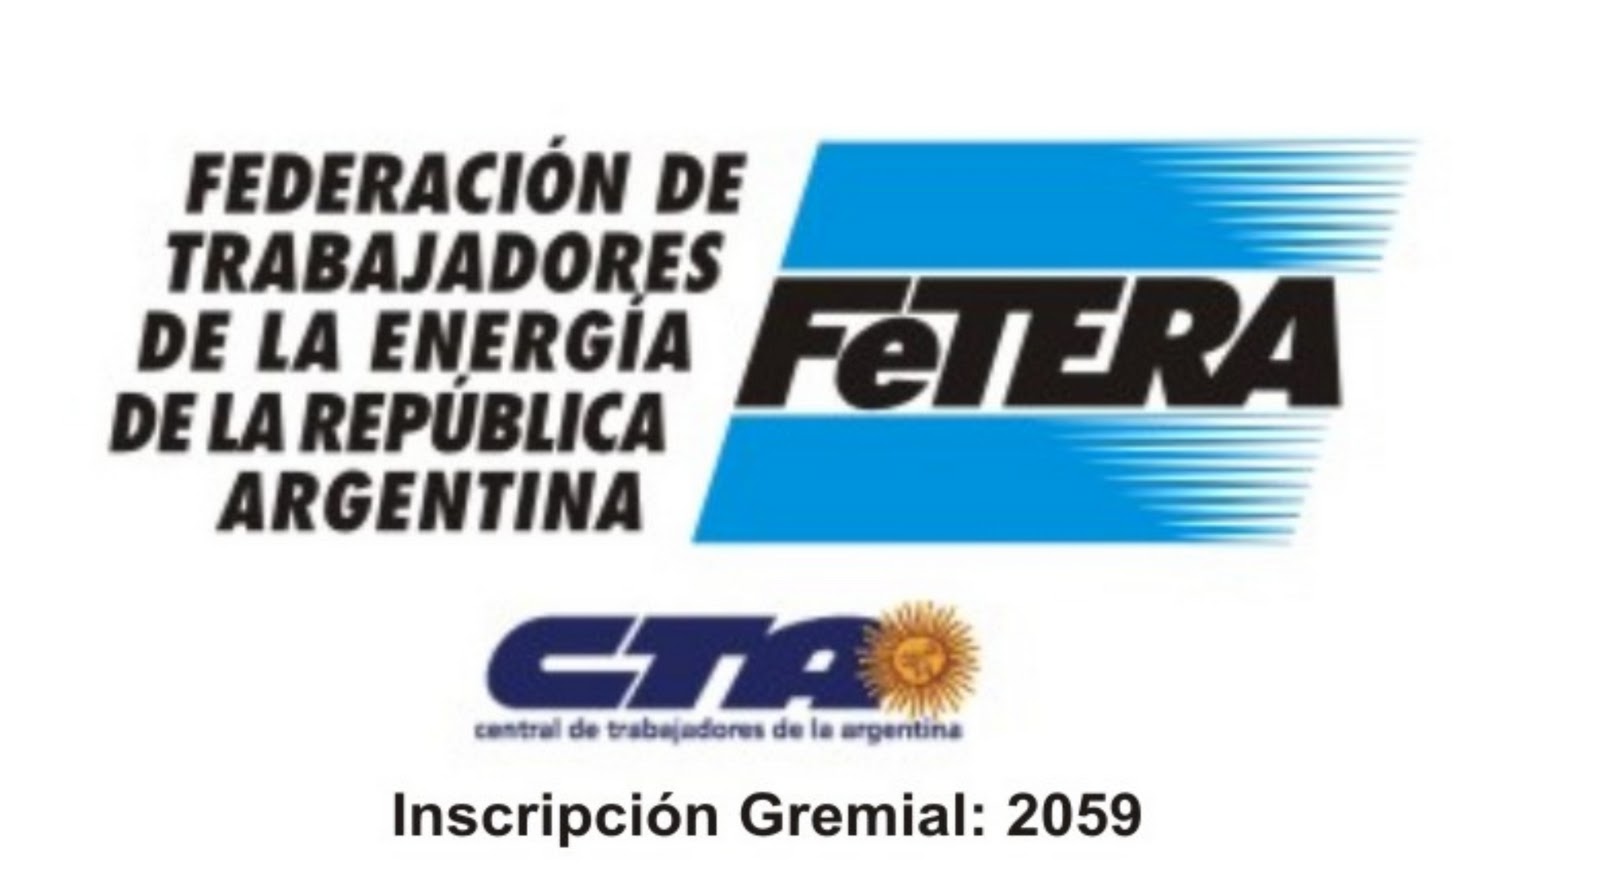 La FeTERA convocó a su XIV Congreso Nacional Ordinario